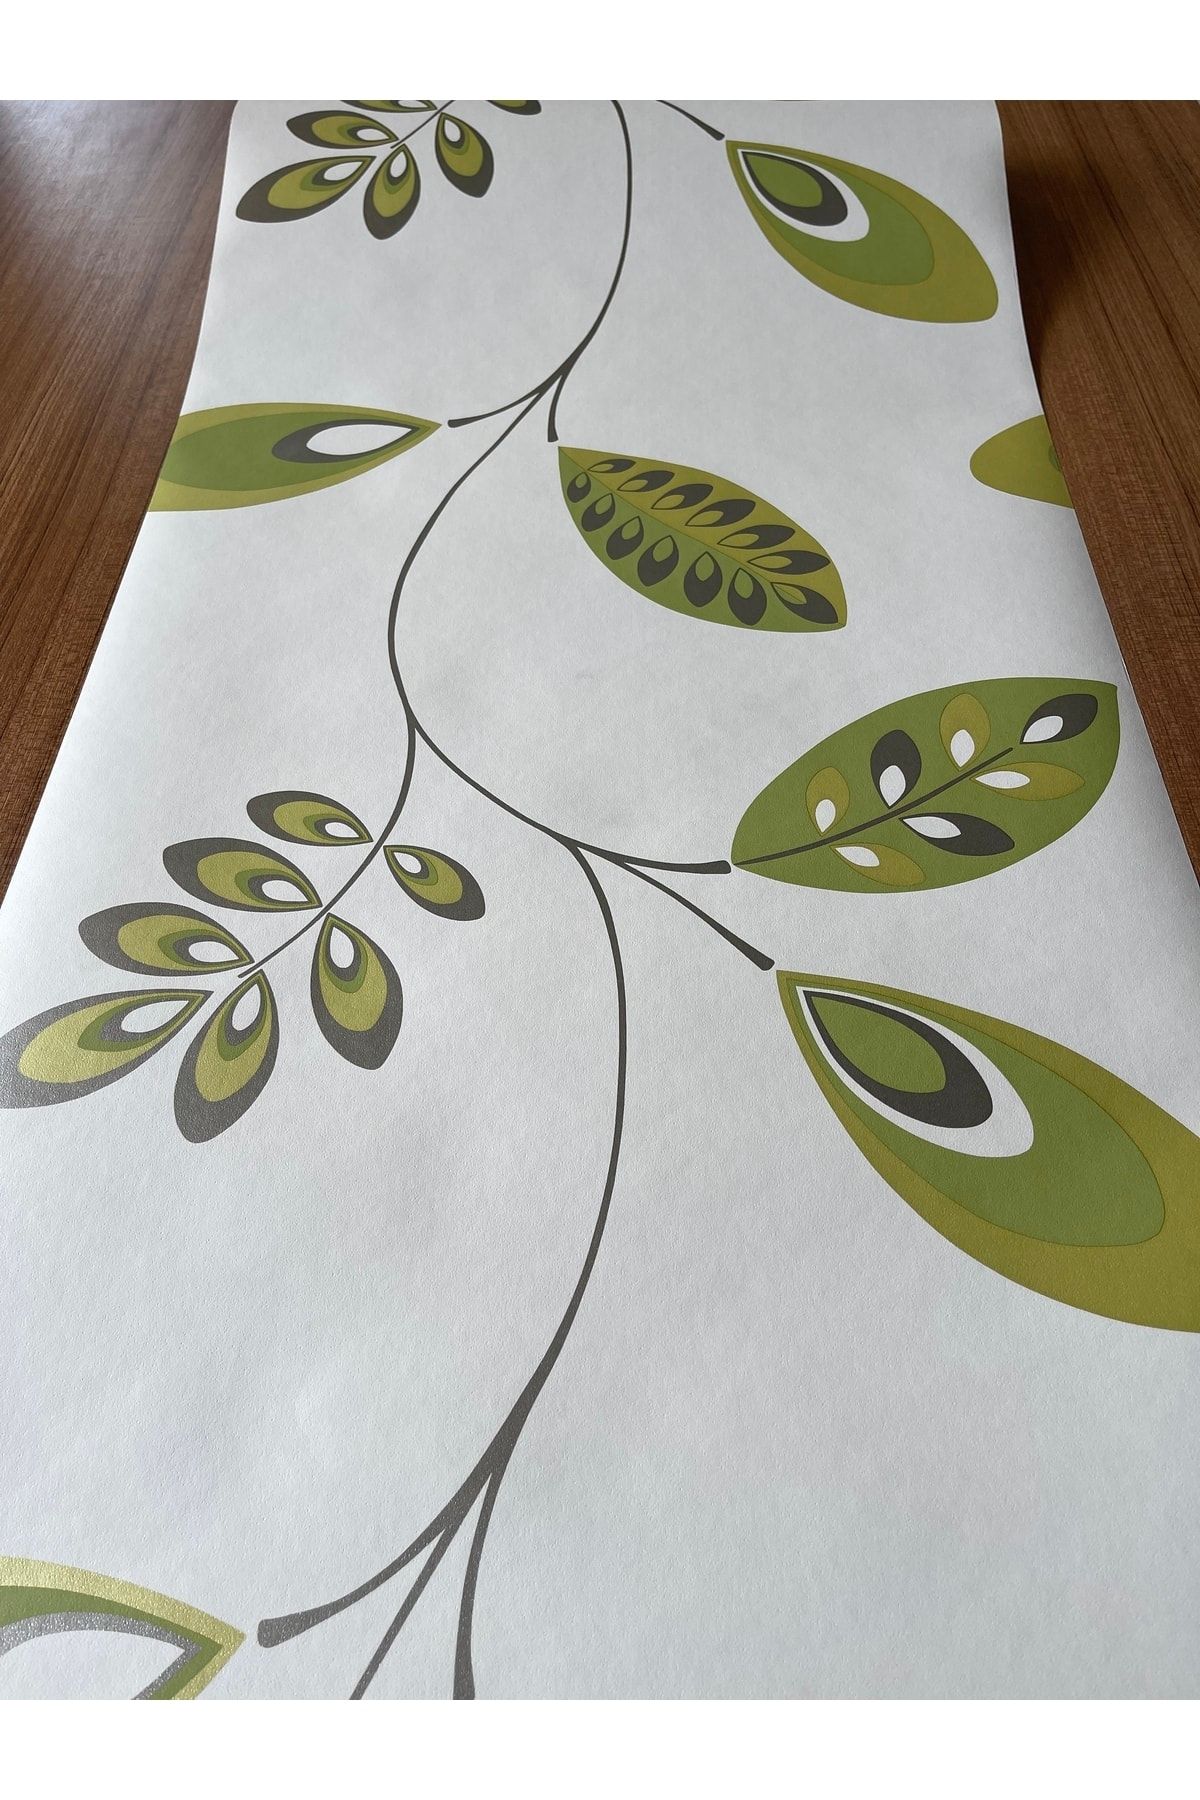 BAŞYAPI DİZAYN Yeşil Yaprak Desenli Ithal Duvar Kağıdı (5m²)